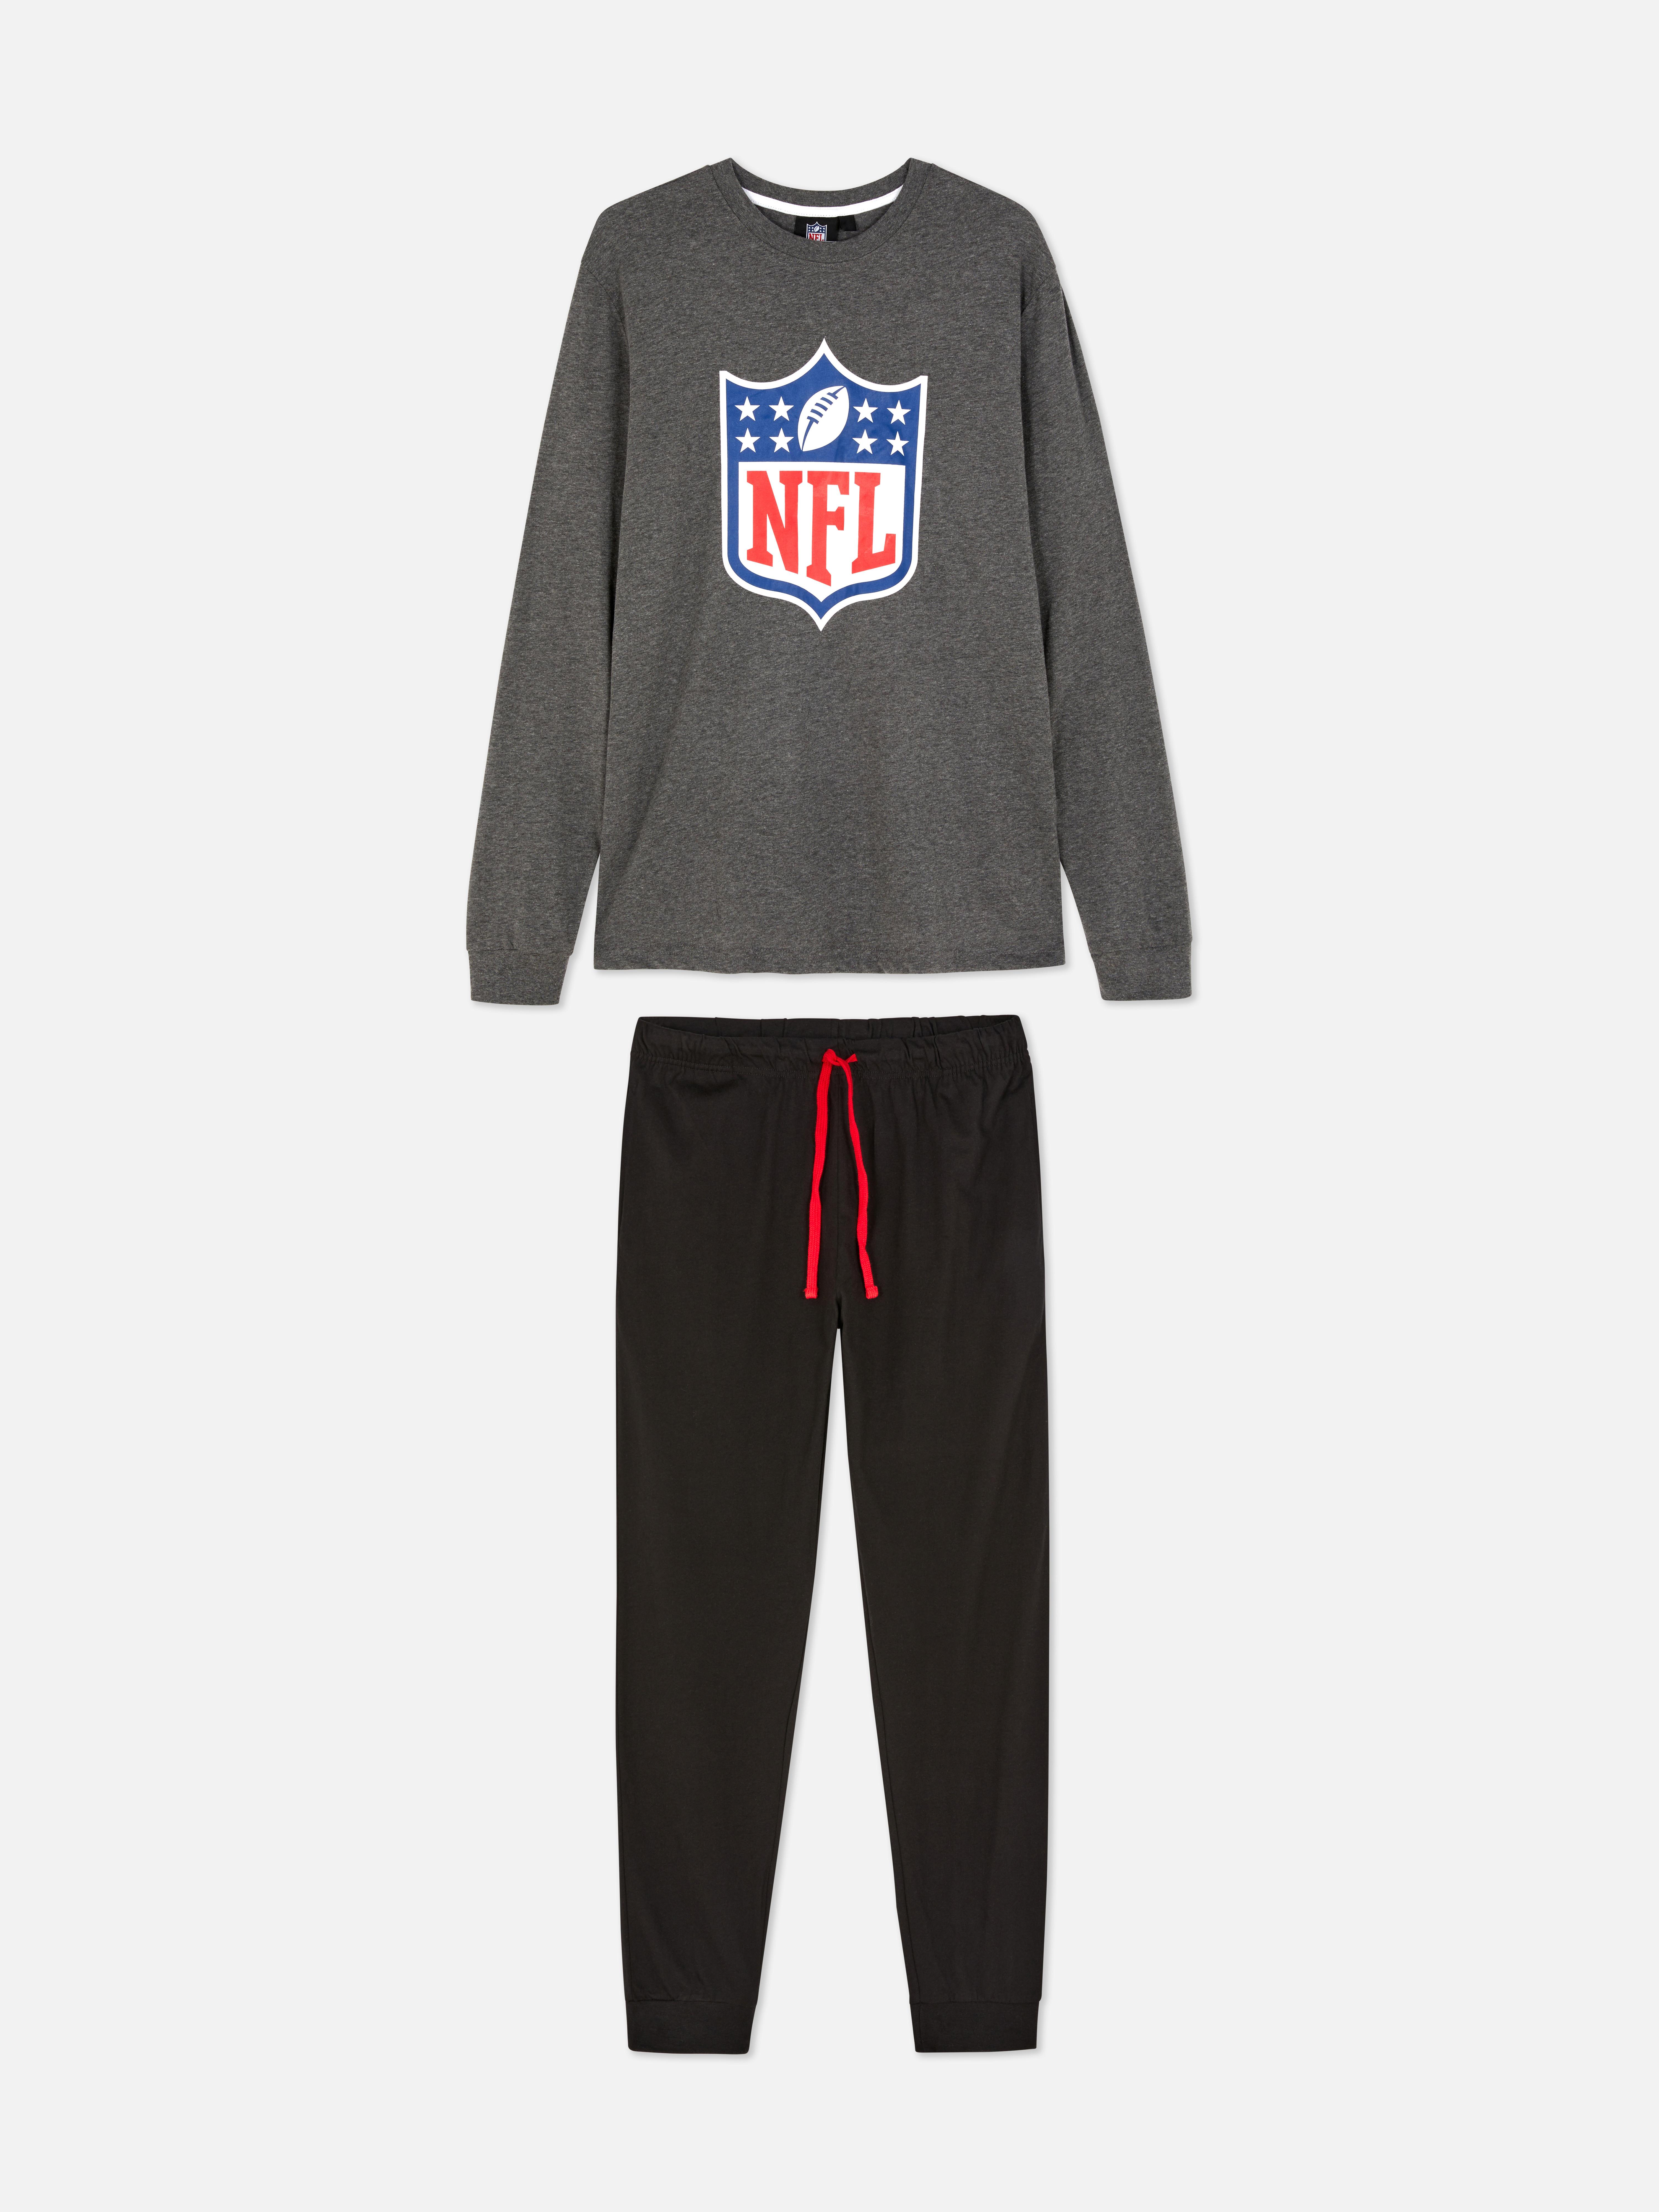 Pijama escudo NFL